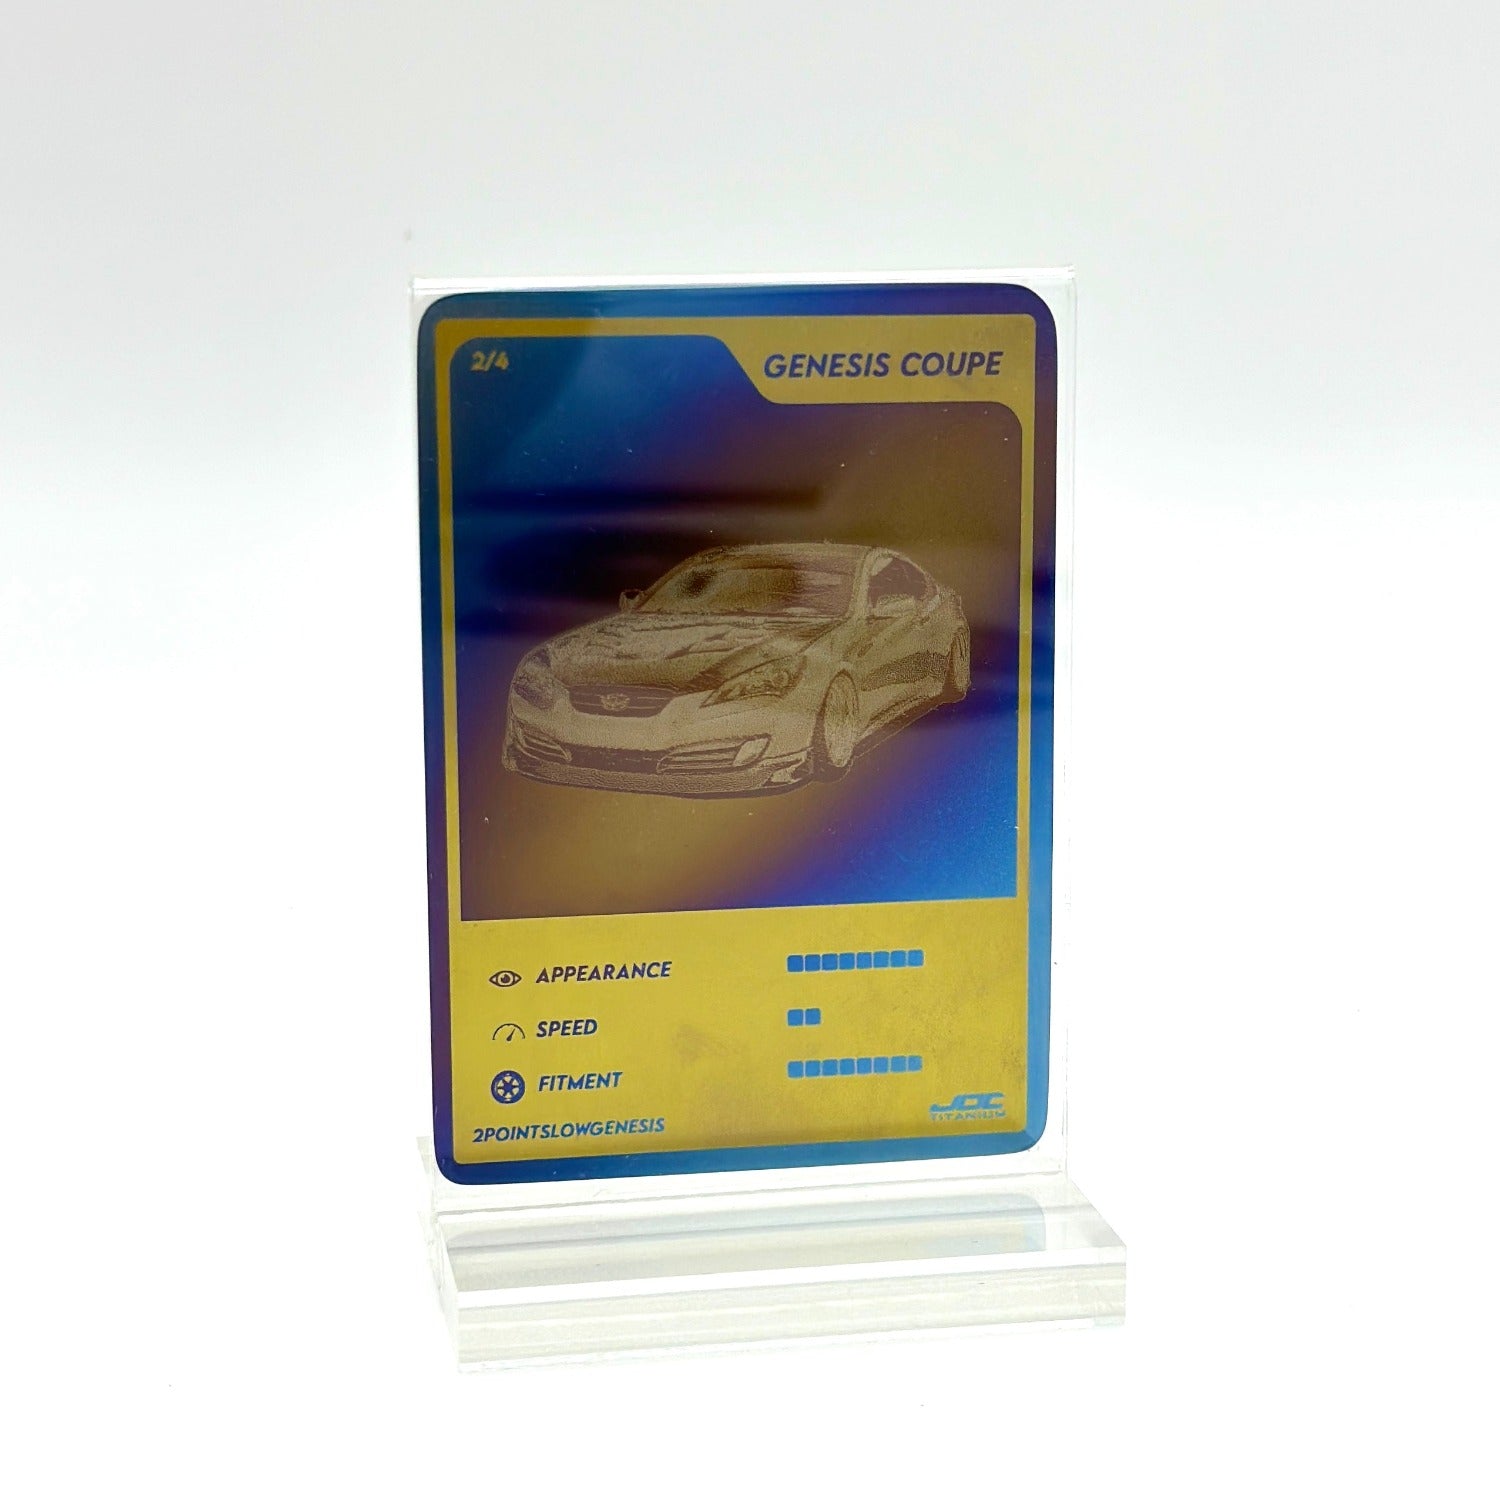 JDC Titanium Custom Trading Cards- Make Your Own Unique Titanium Trading Card!